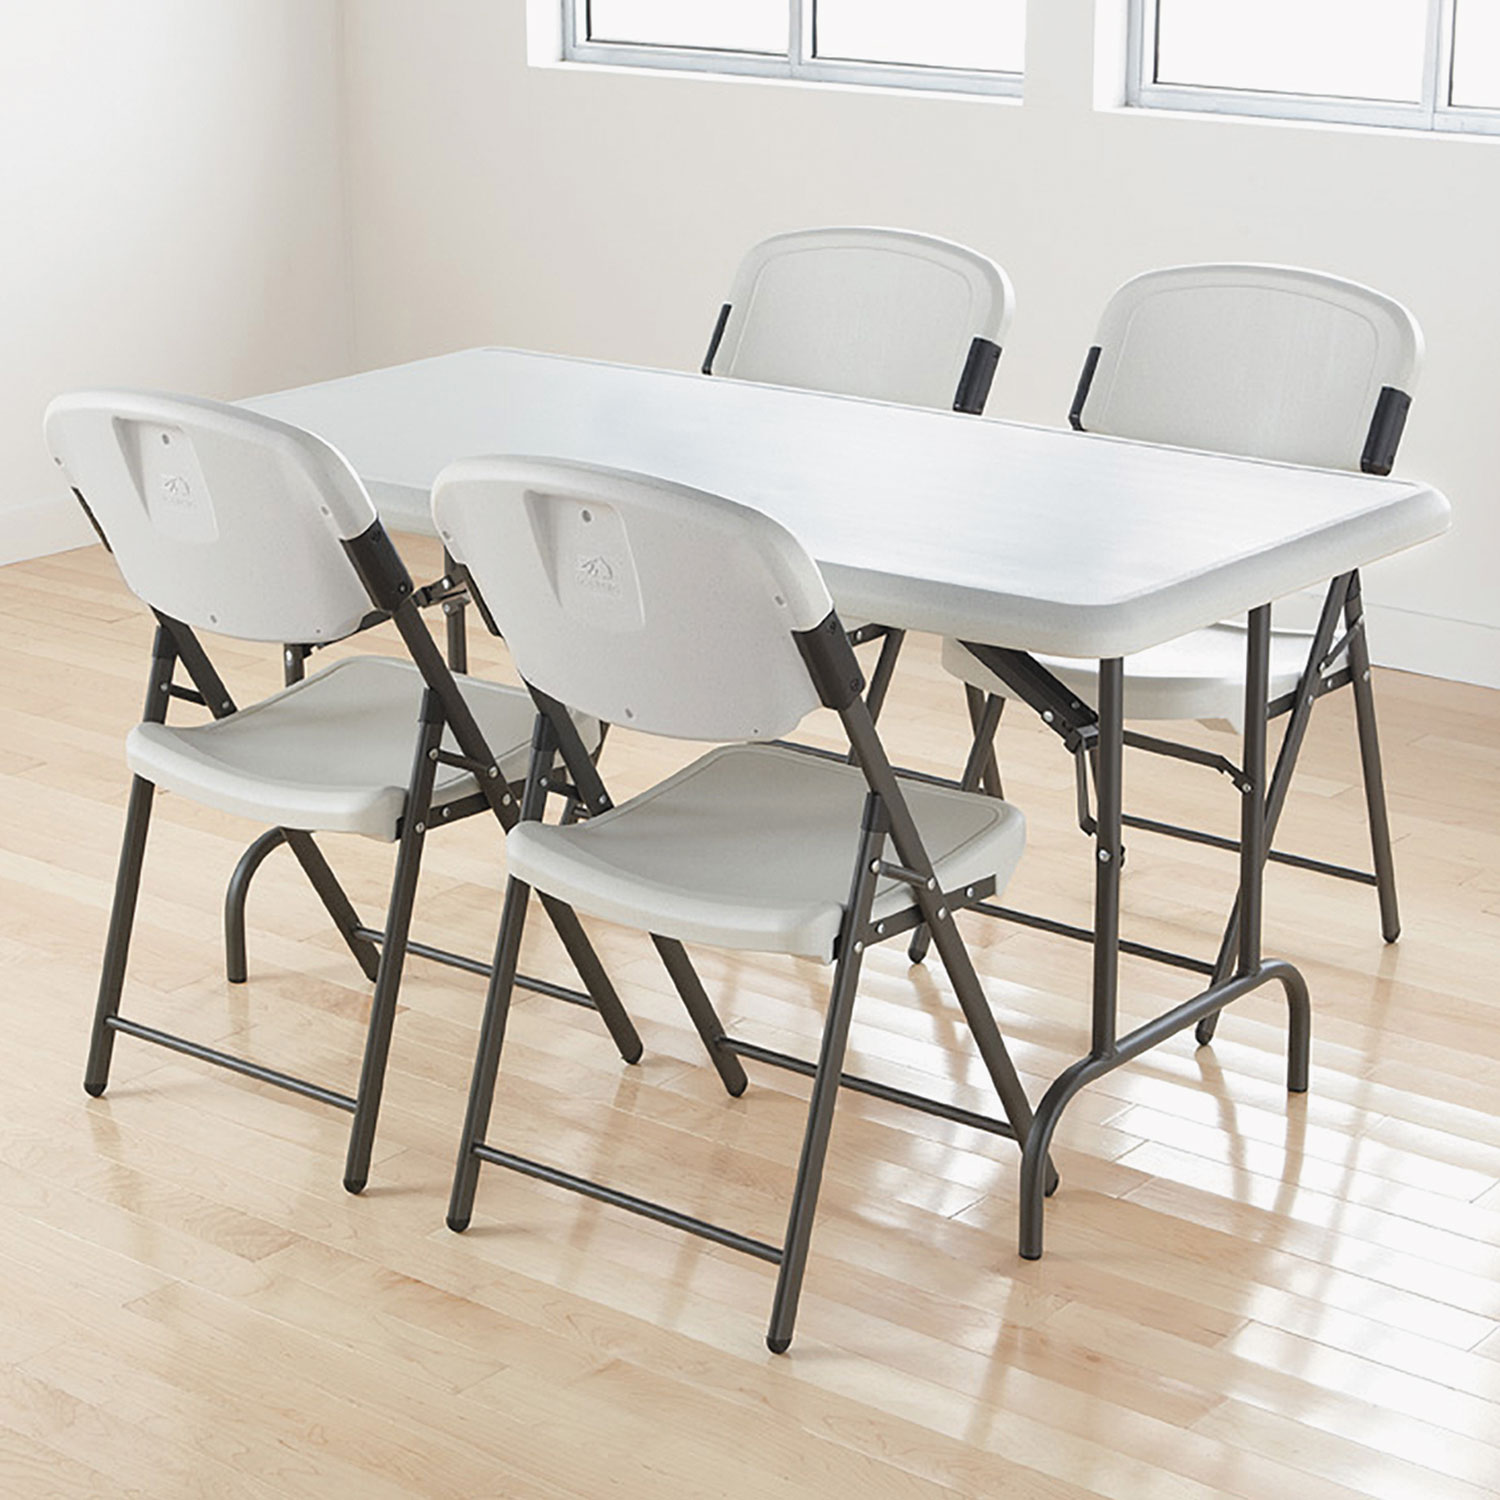 Lifetime Commercial Folding Table, 72L x 30W x 29H, Black